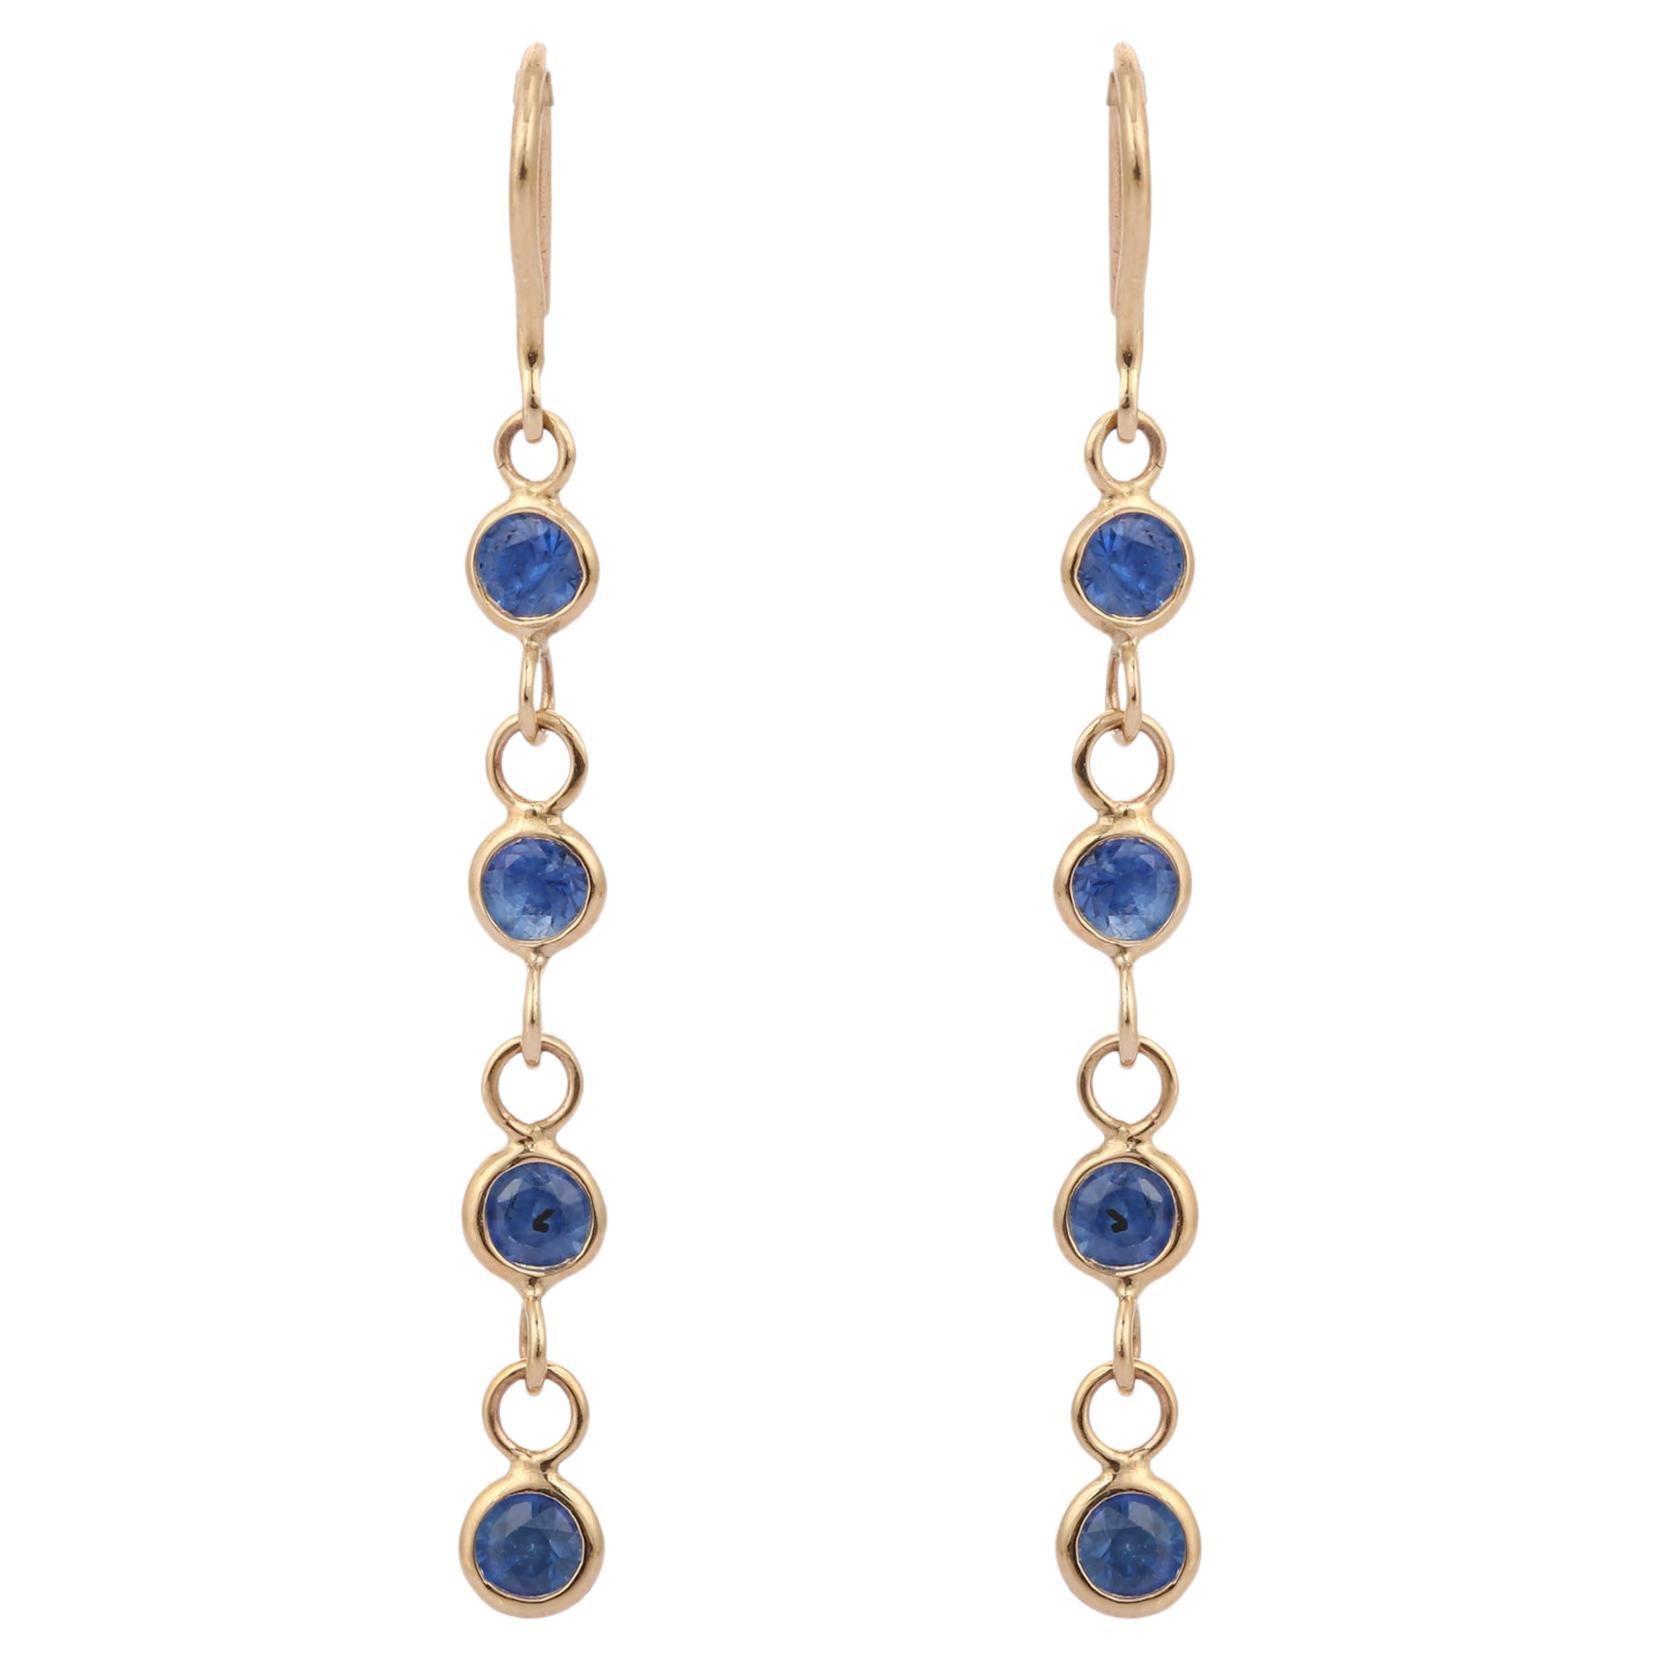 Natural Blue Sapphire Dangle Earrings in 18K Yellow Gold, Linear Earrings